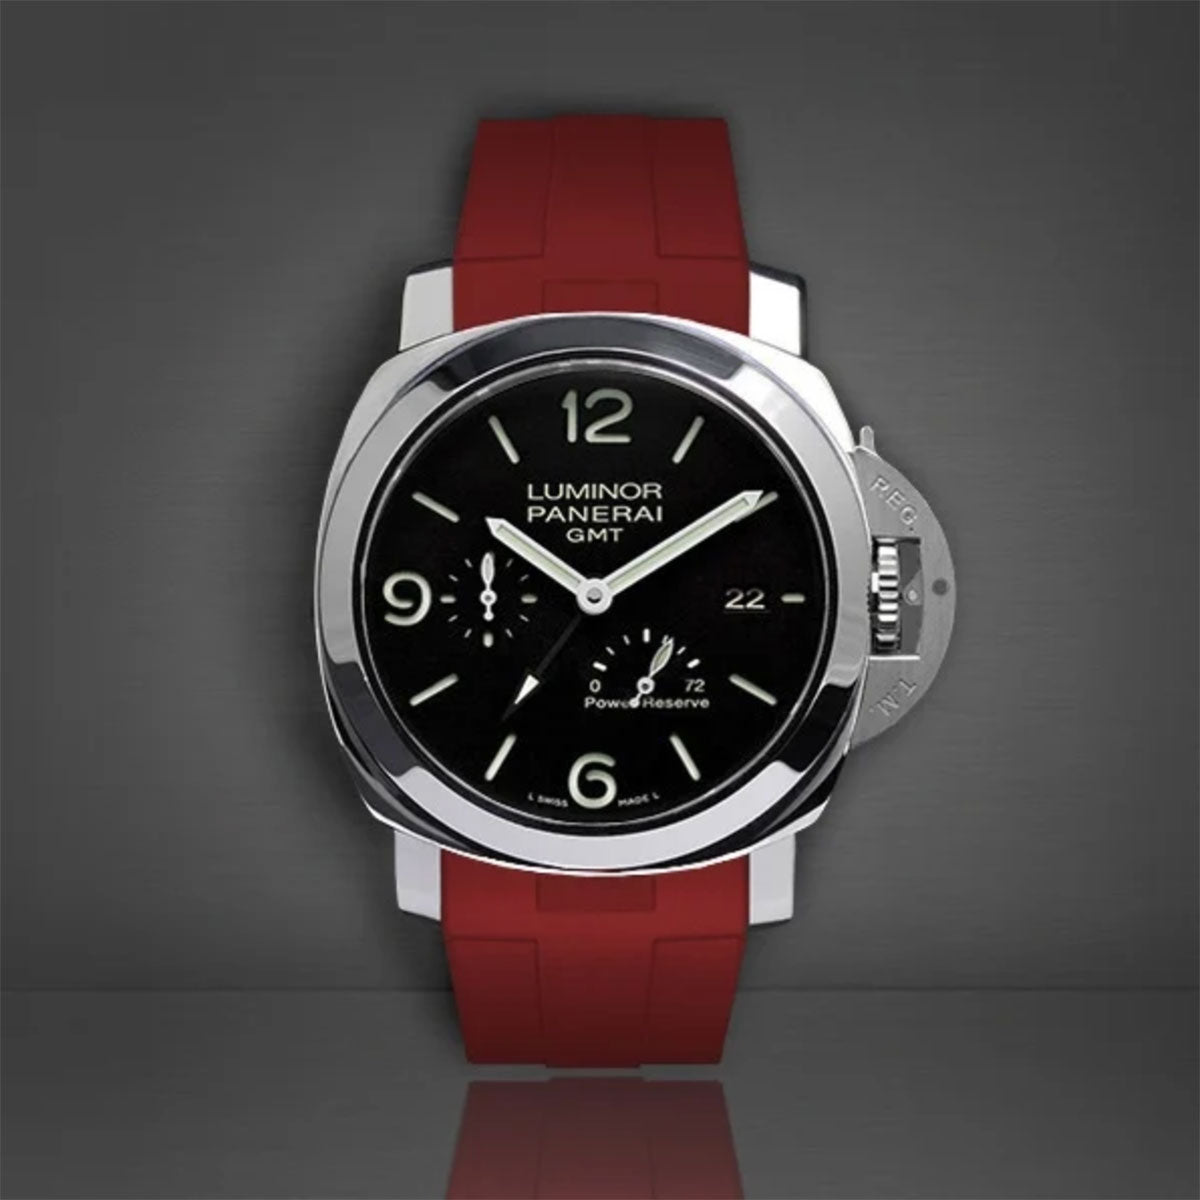 Panerai - Rubber B - Bracelet caoutchouc pour Luminor 1950 44mm (Type I) - watch band leather strap - ABP Concept -